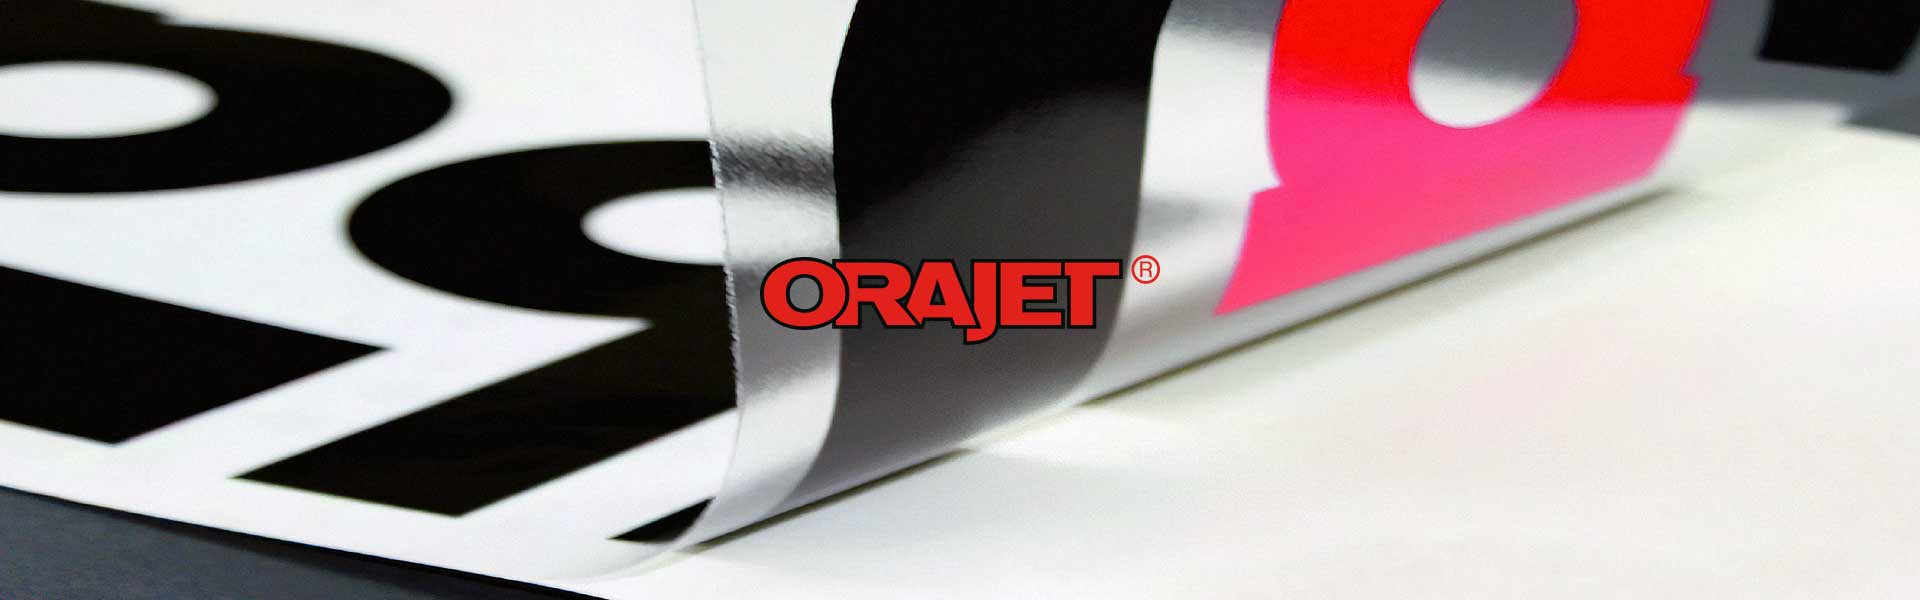 Прозора плівка Orajet 3640 для цифрового друку – 1,56 € за м.кв